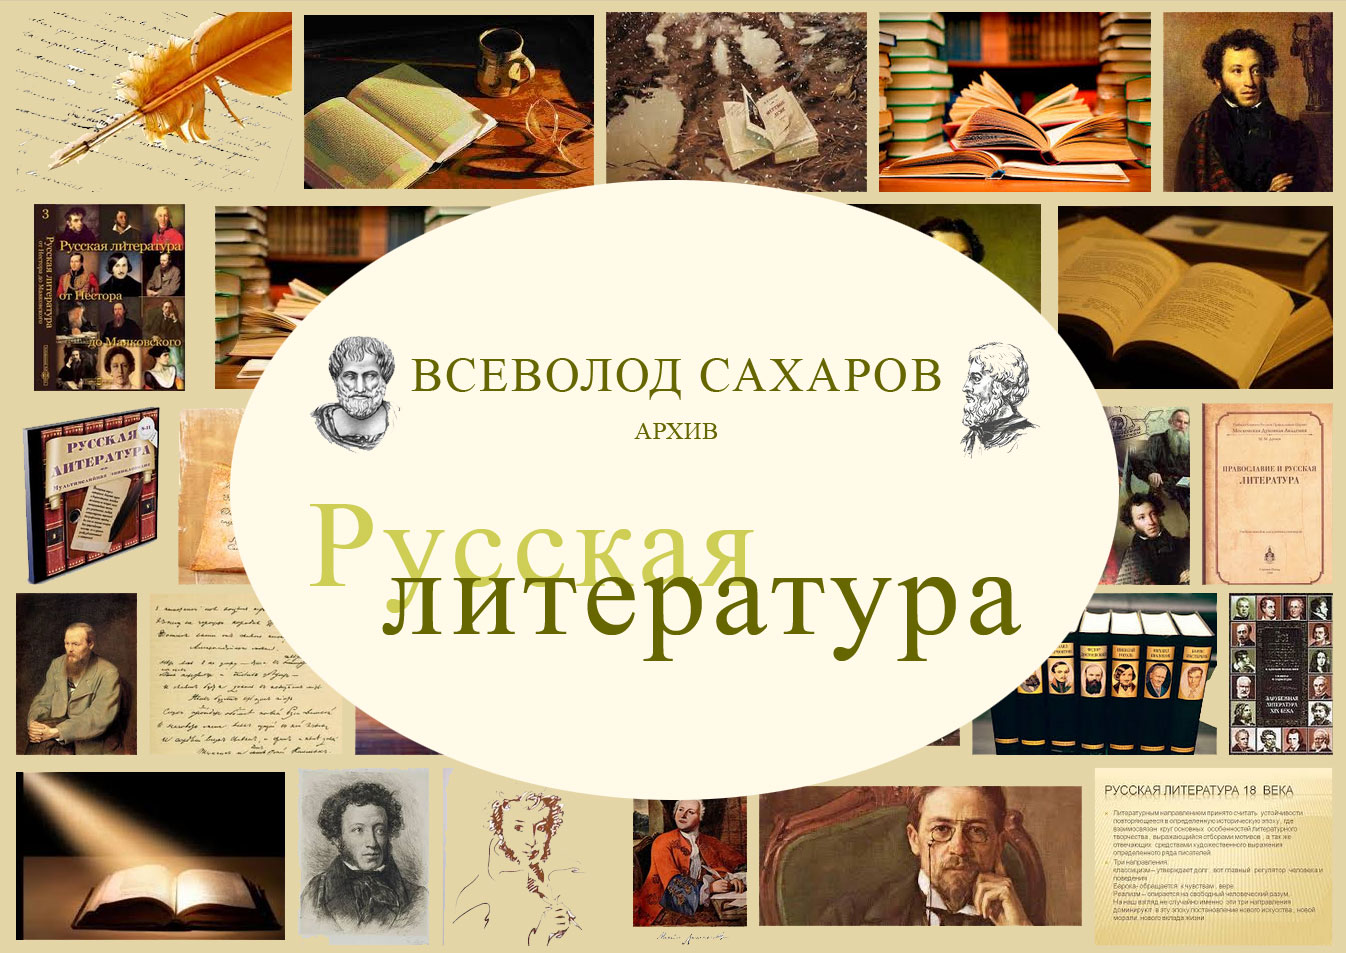 Русская литература серебряного века. Подробнее на archvs.org